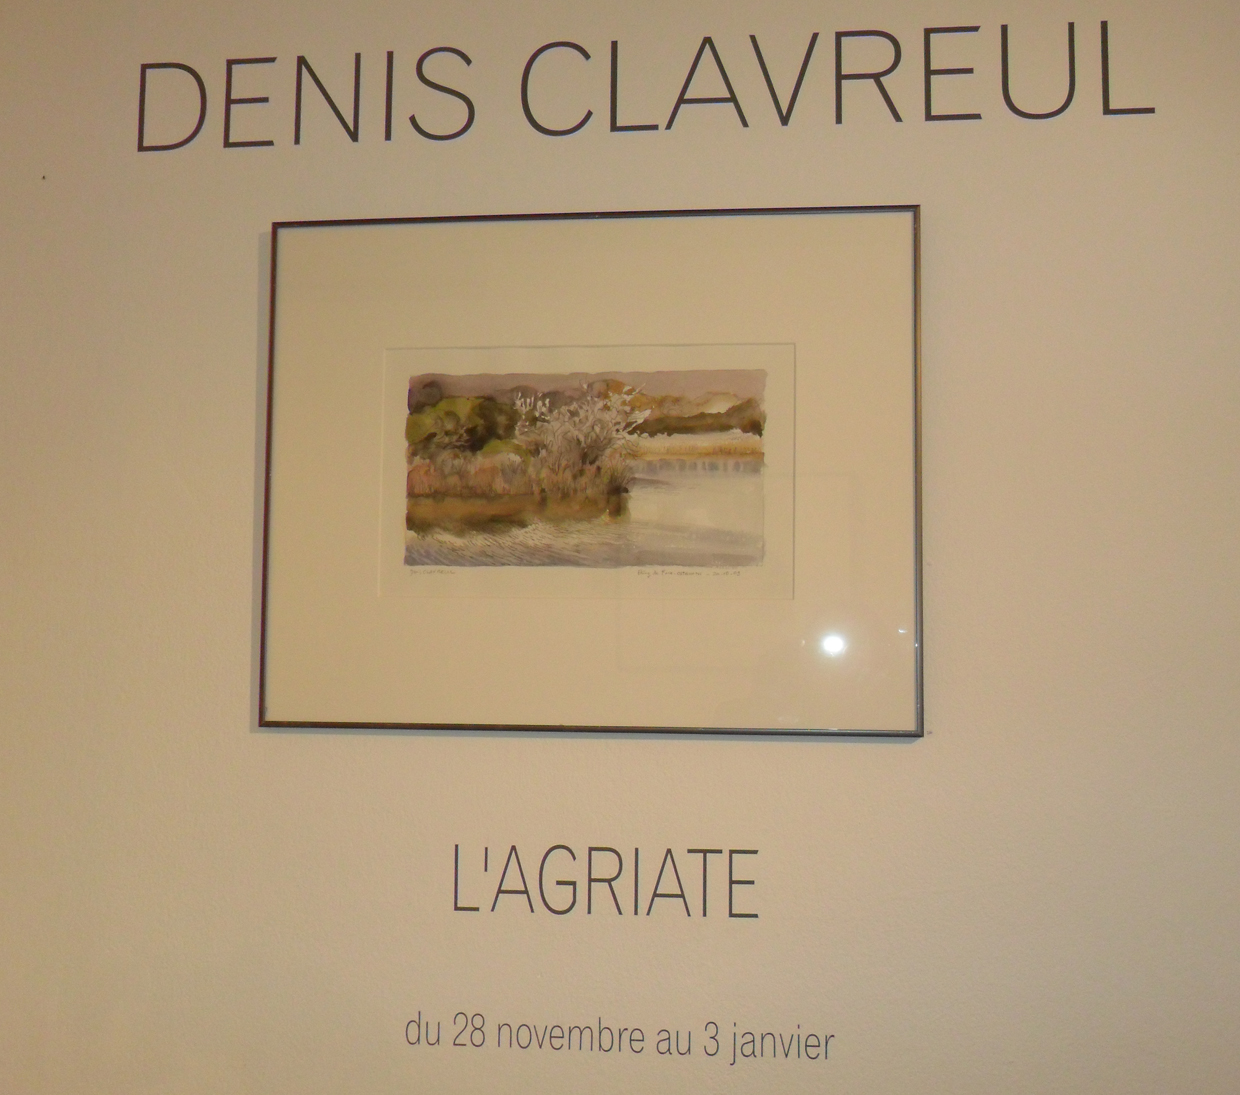 Bastia : Denis Clavreul expose "L'Agriate" au Centre Culturel Una Volta